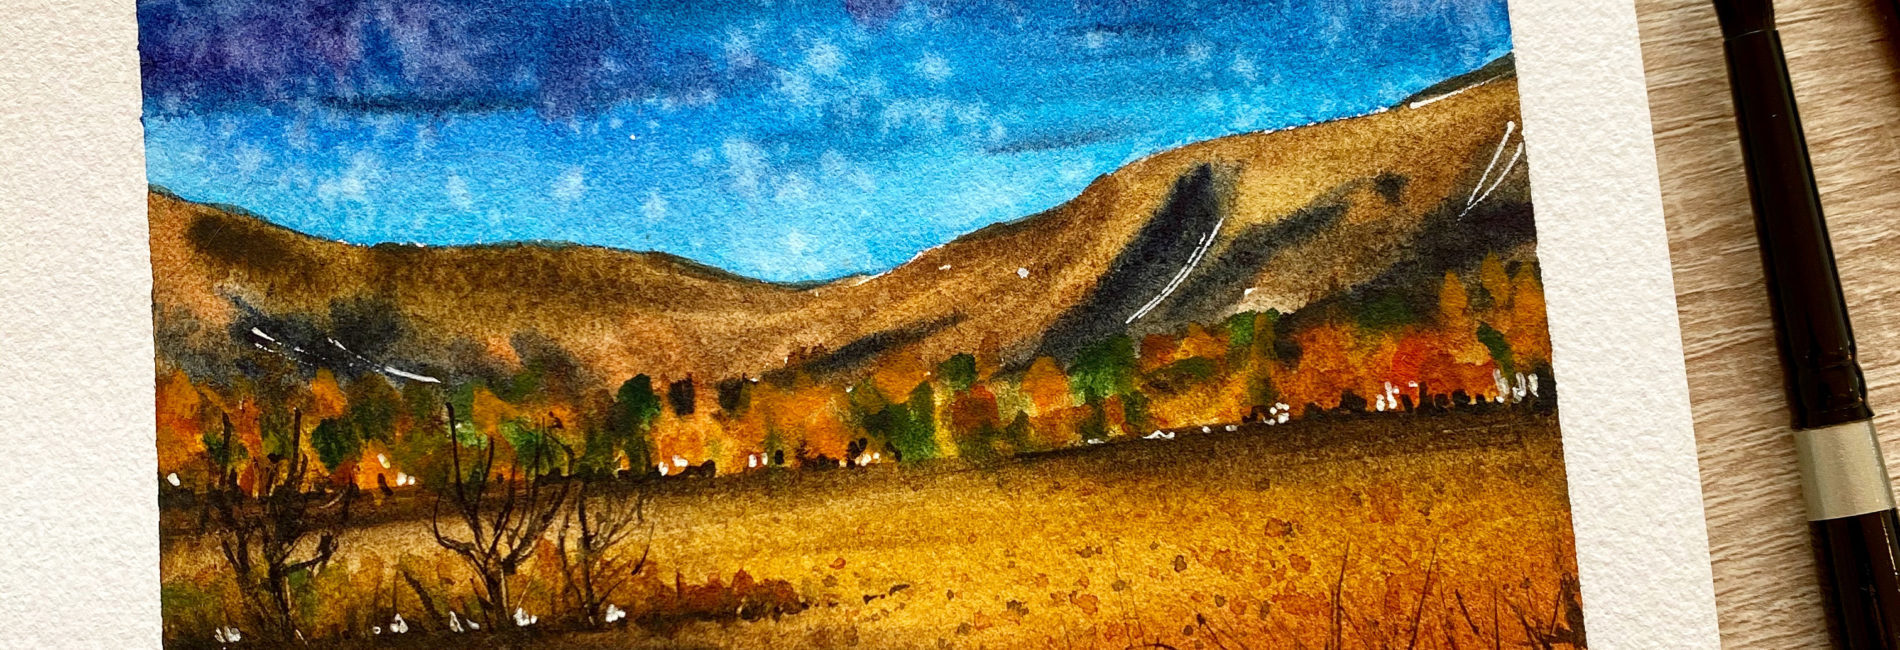 A vivid landscape in watercolor